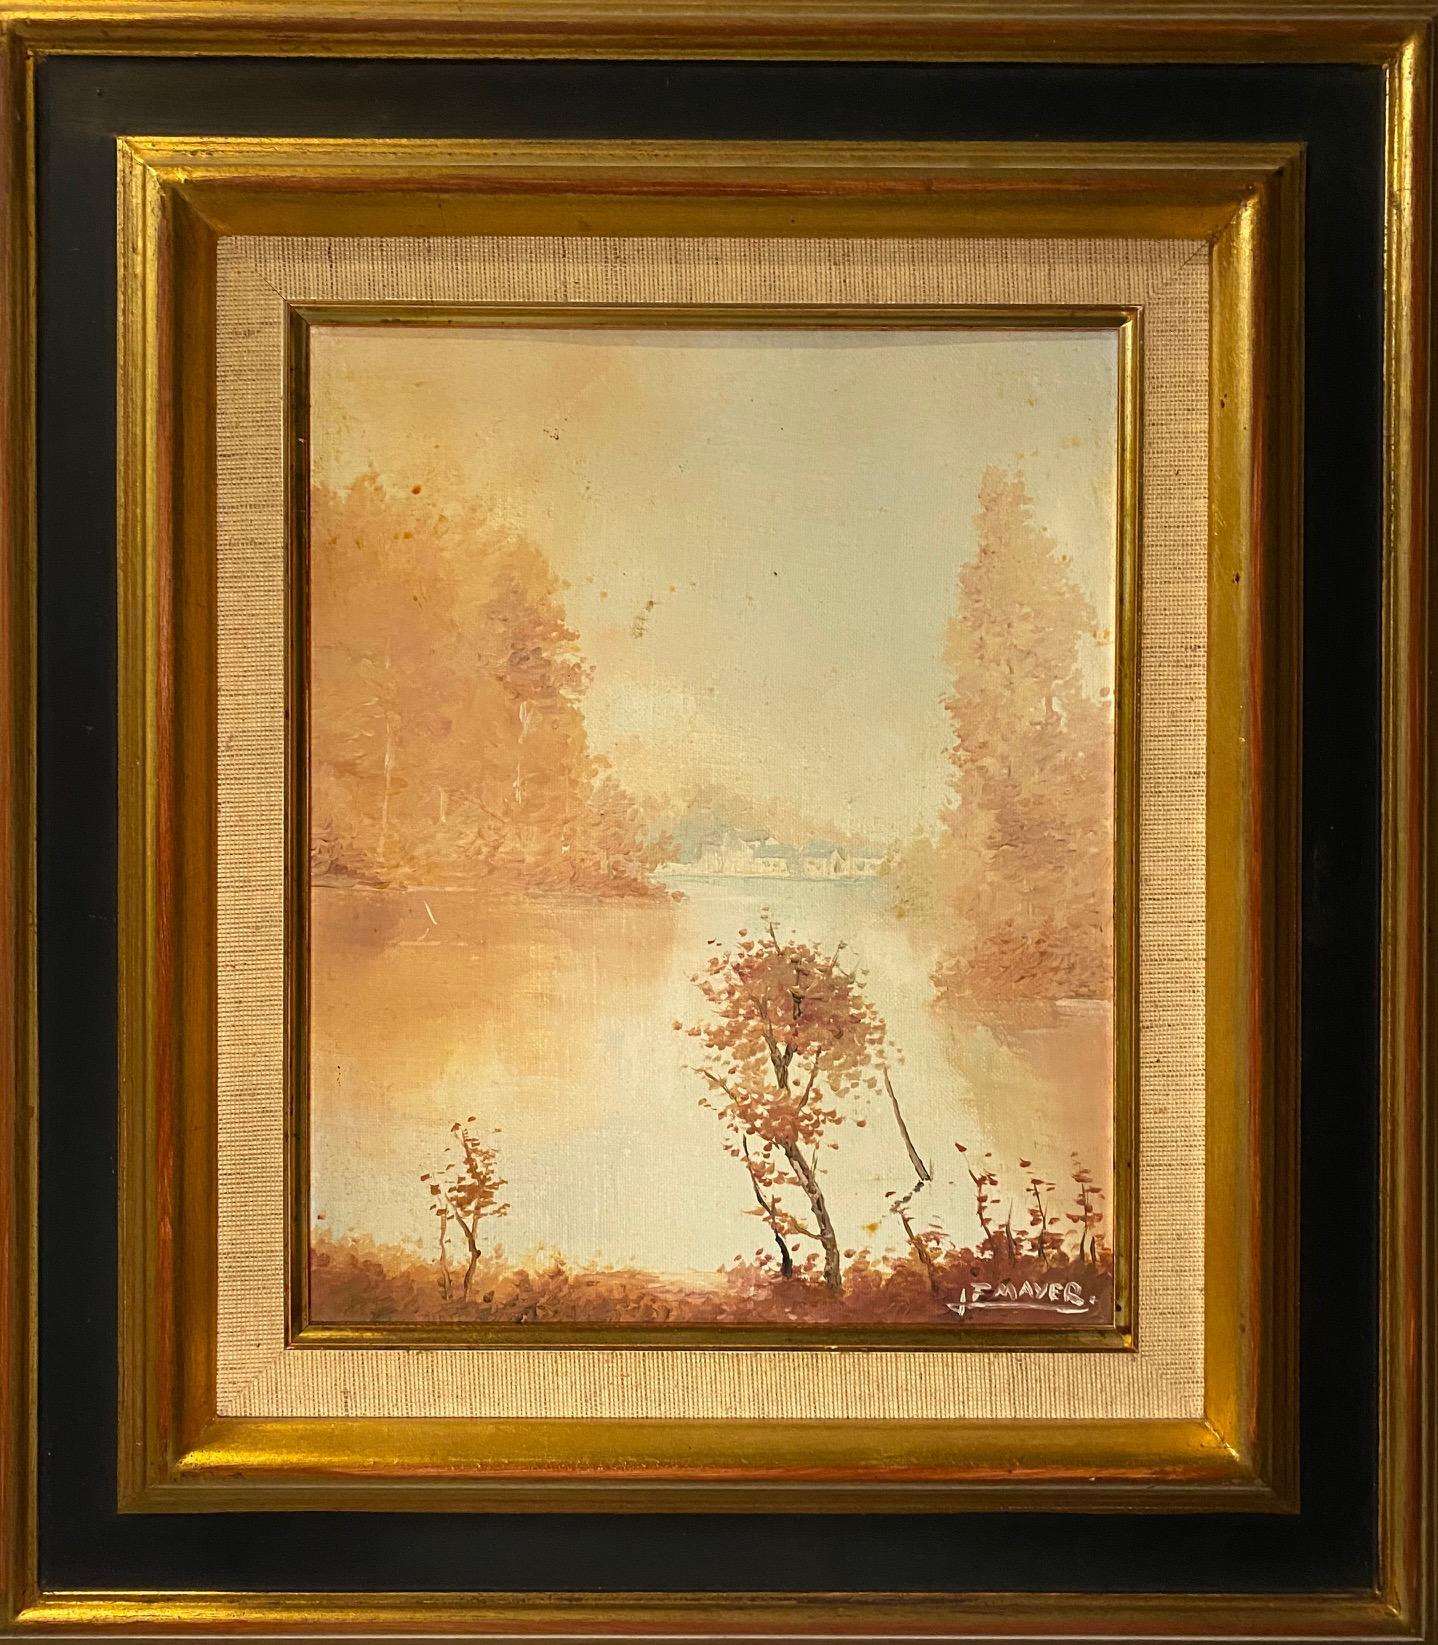 Huile sur toile vendue avec cadre 
Dimensions totales avec cadre 39x44 cm 
Signé JF Mayer, artiste né au 19e siècle en Suisse 
